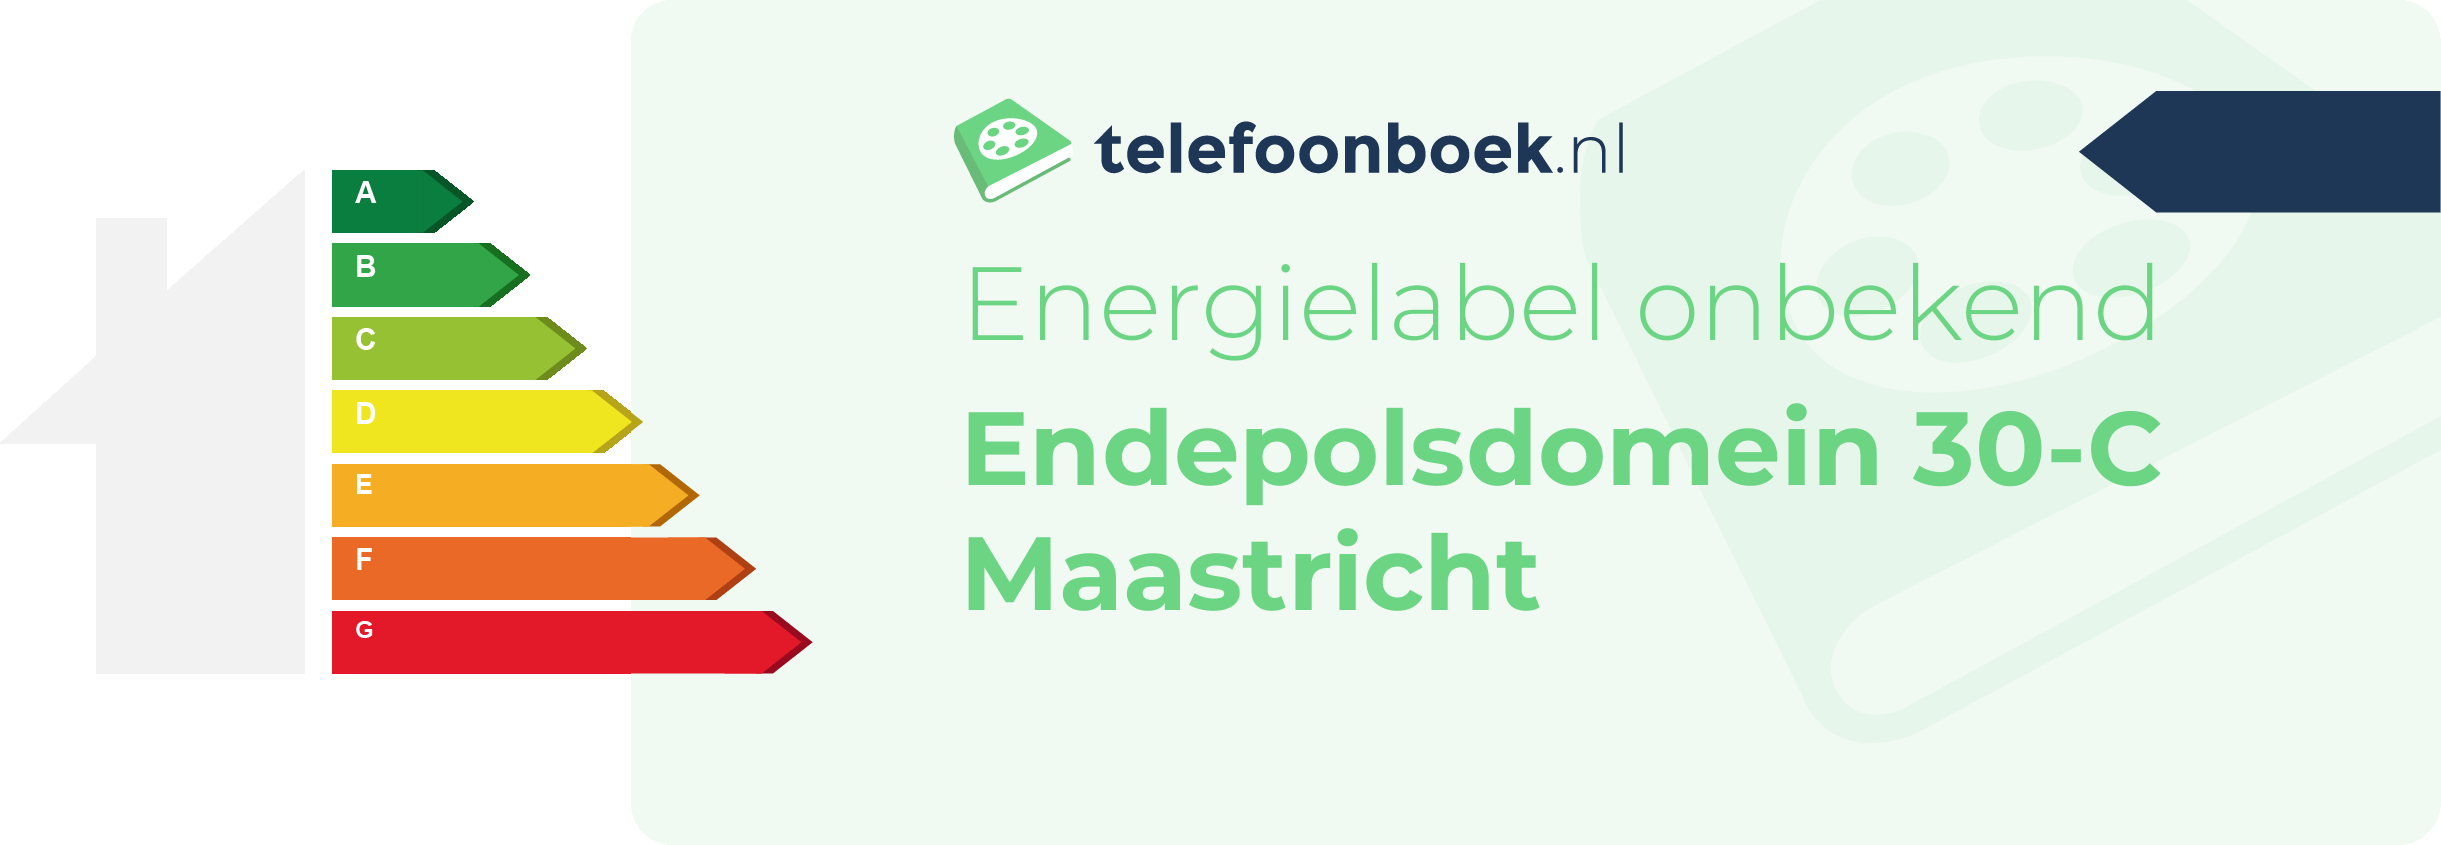 Energielabel Endepolsdomein 30-C Maastricht